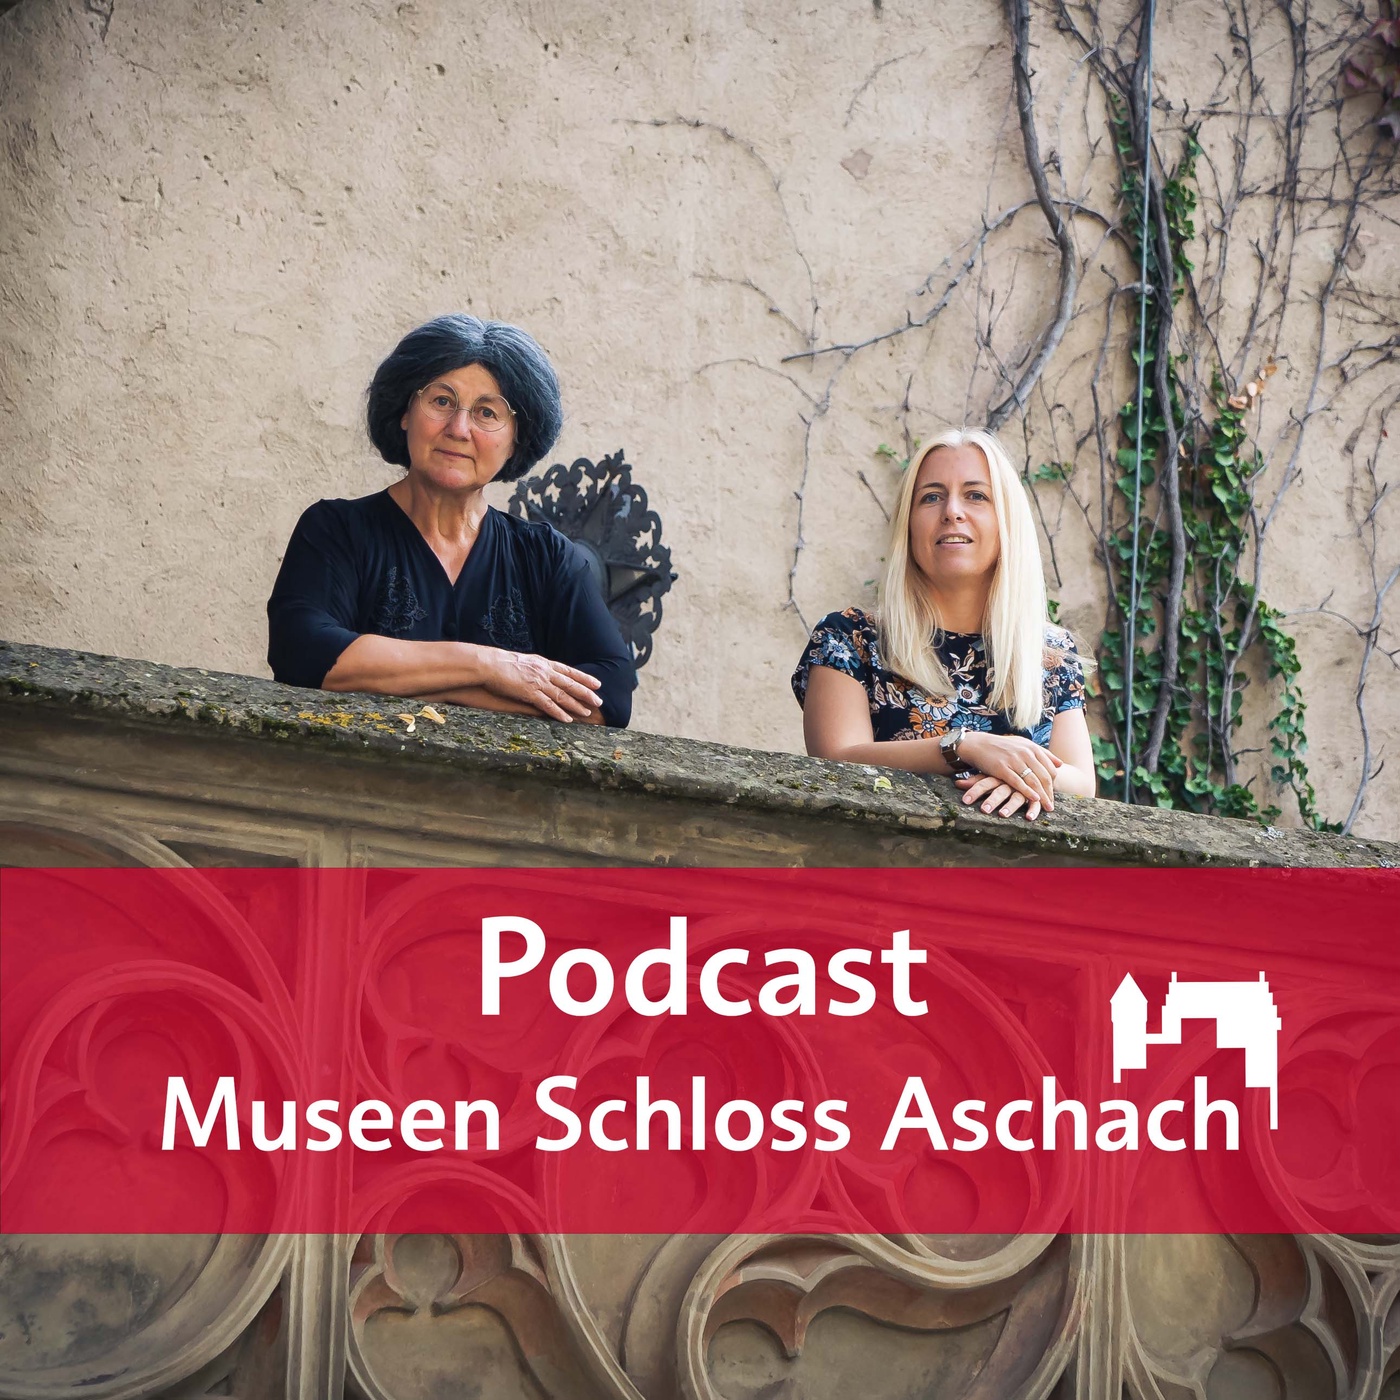 Museen Schloss Aschach